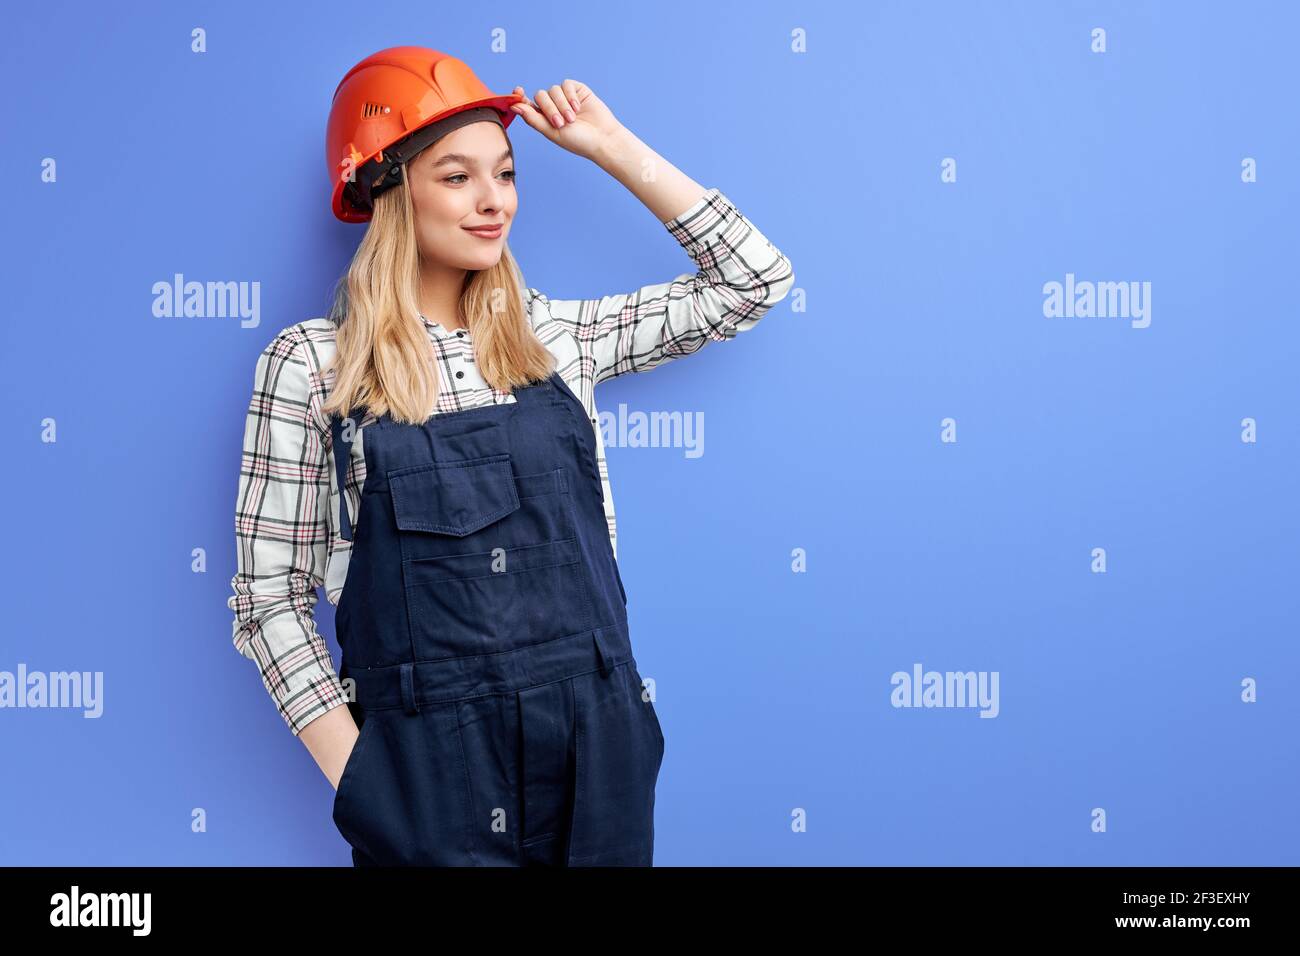 Architektin Frau in Overalls isoliert über blauem Studiohintergrund, junge Frau in orangefarbenem Hut posiert vor der Kamera und schaut zur Seite, arbeitet als su Stockfoto